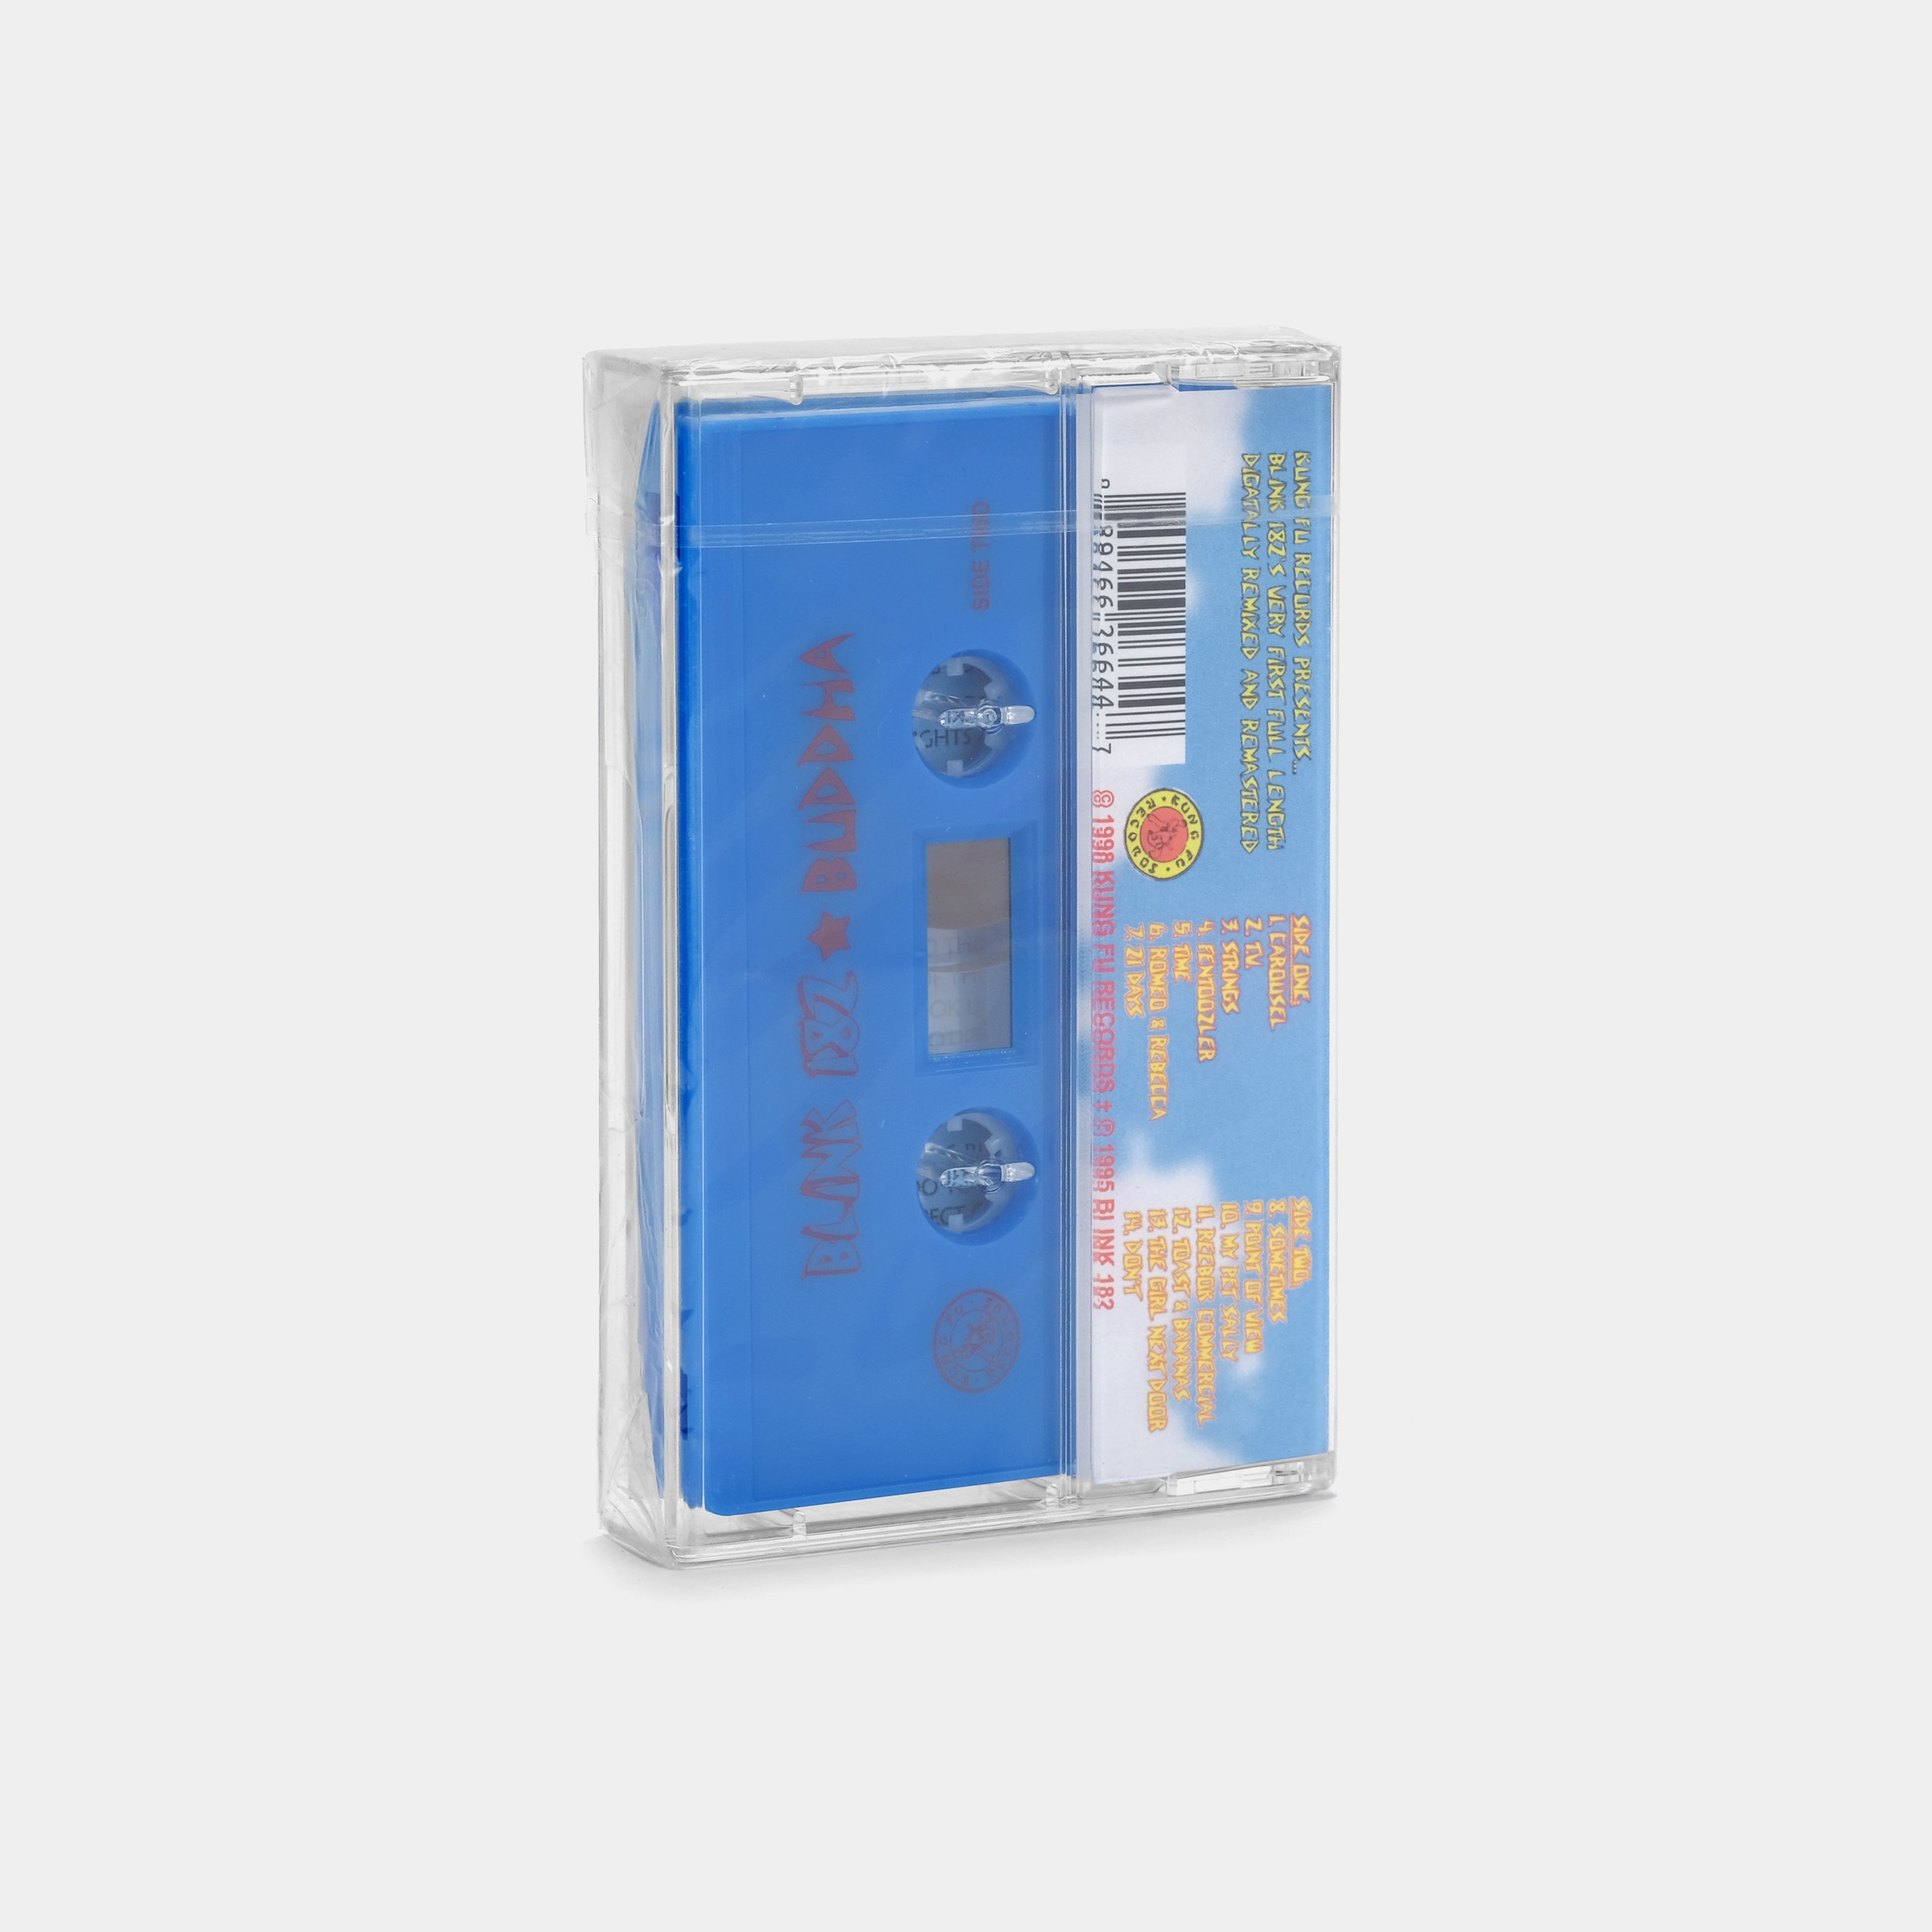 Blink-182 - Buddha Cassette Tape